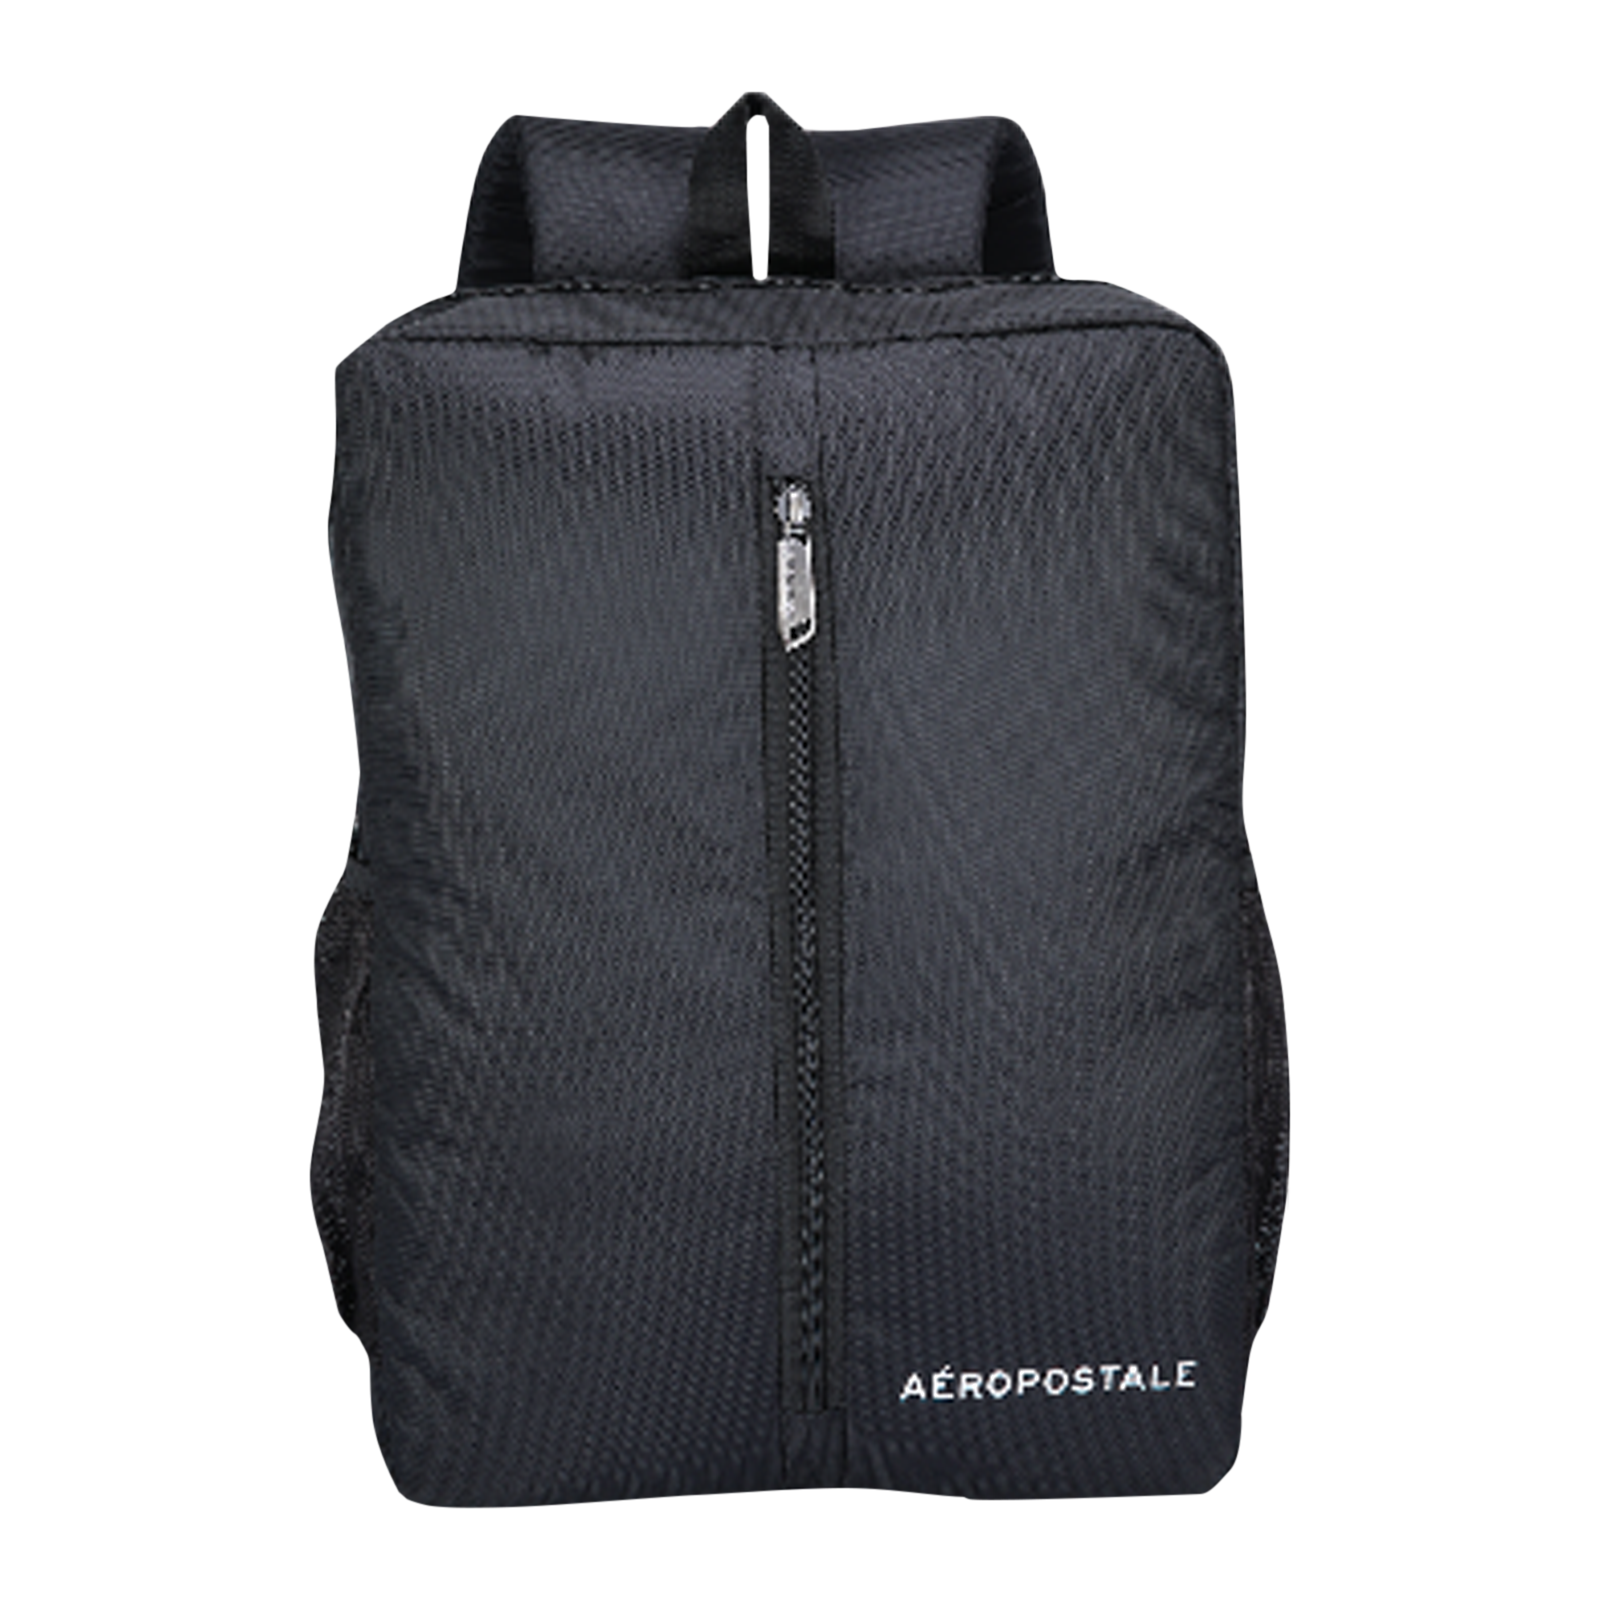 AEROPOSTALE BP-7334 Laptop Backpack (Adjustable Shoulder Straps, Black)